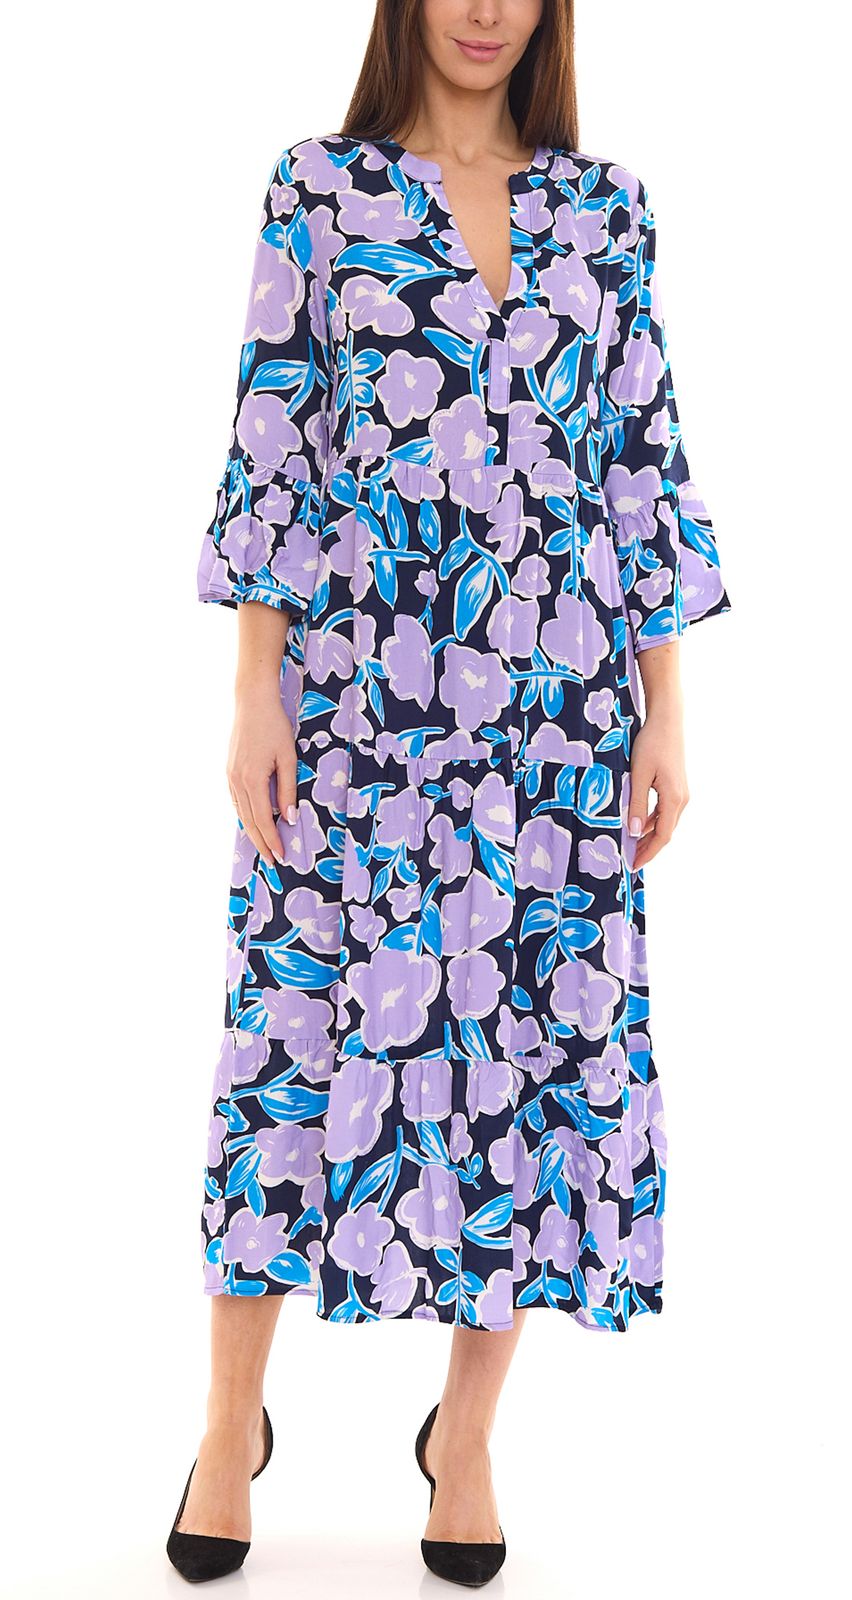 Tamaris Ibiza Damen Sommer-Kleid Maxi-Kleid mit Blumendruck 3/4 Arm-Kleid 65383801 Dunkelblau/Lila von Tamaris